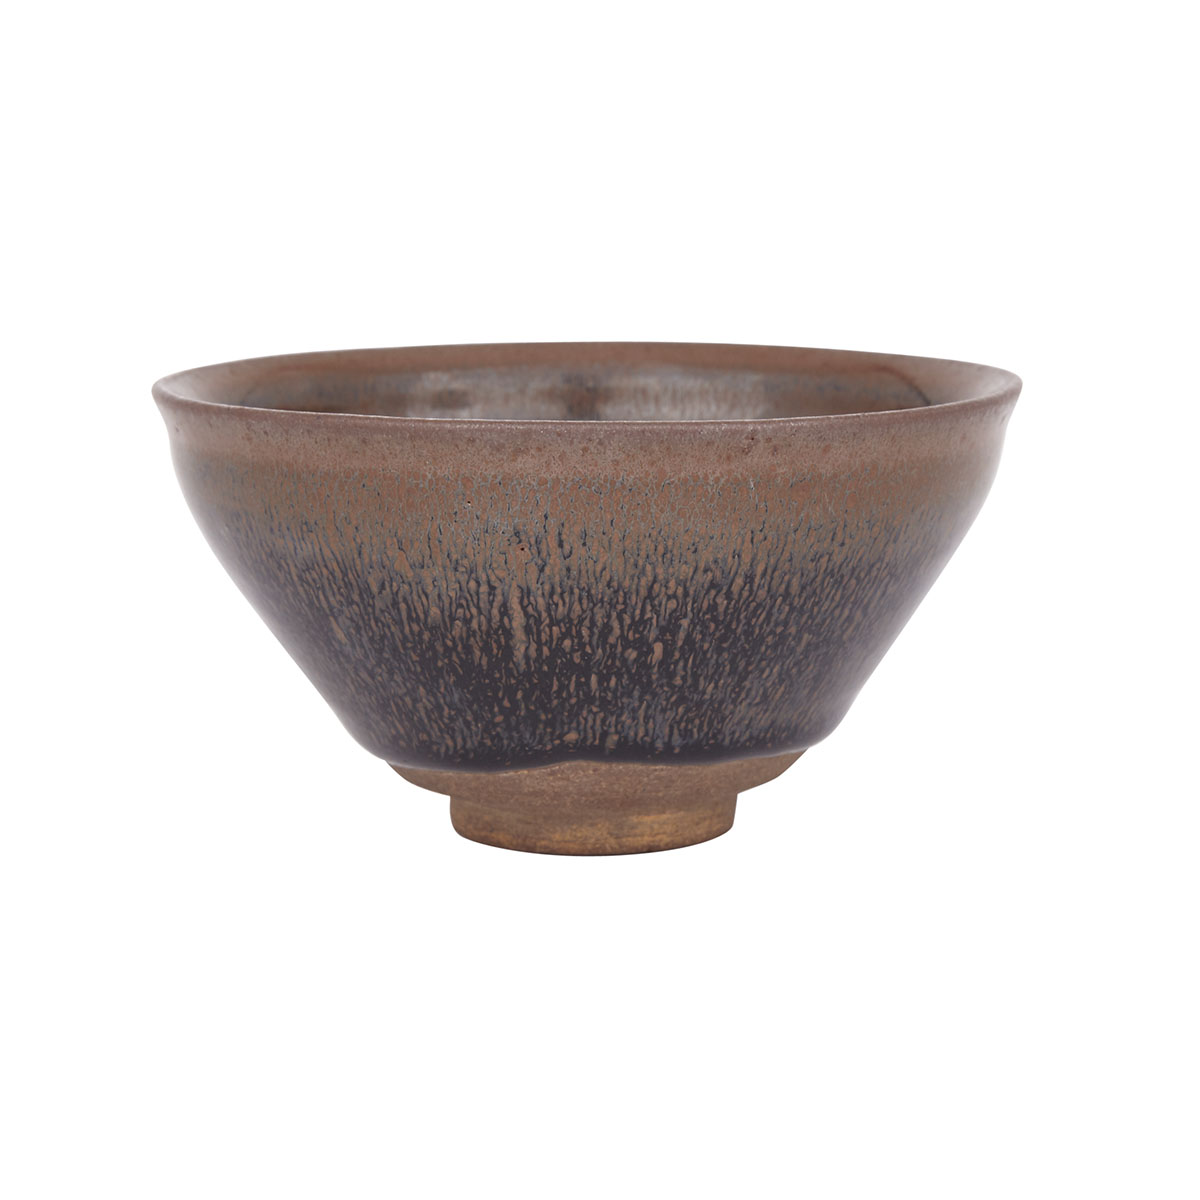 Jianyao ‘Hare’s Fur’ Tea Bowl, Possibly Song Dynasty (960-1279)